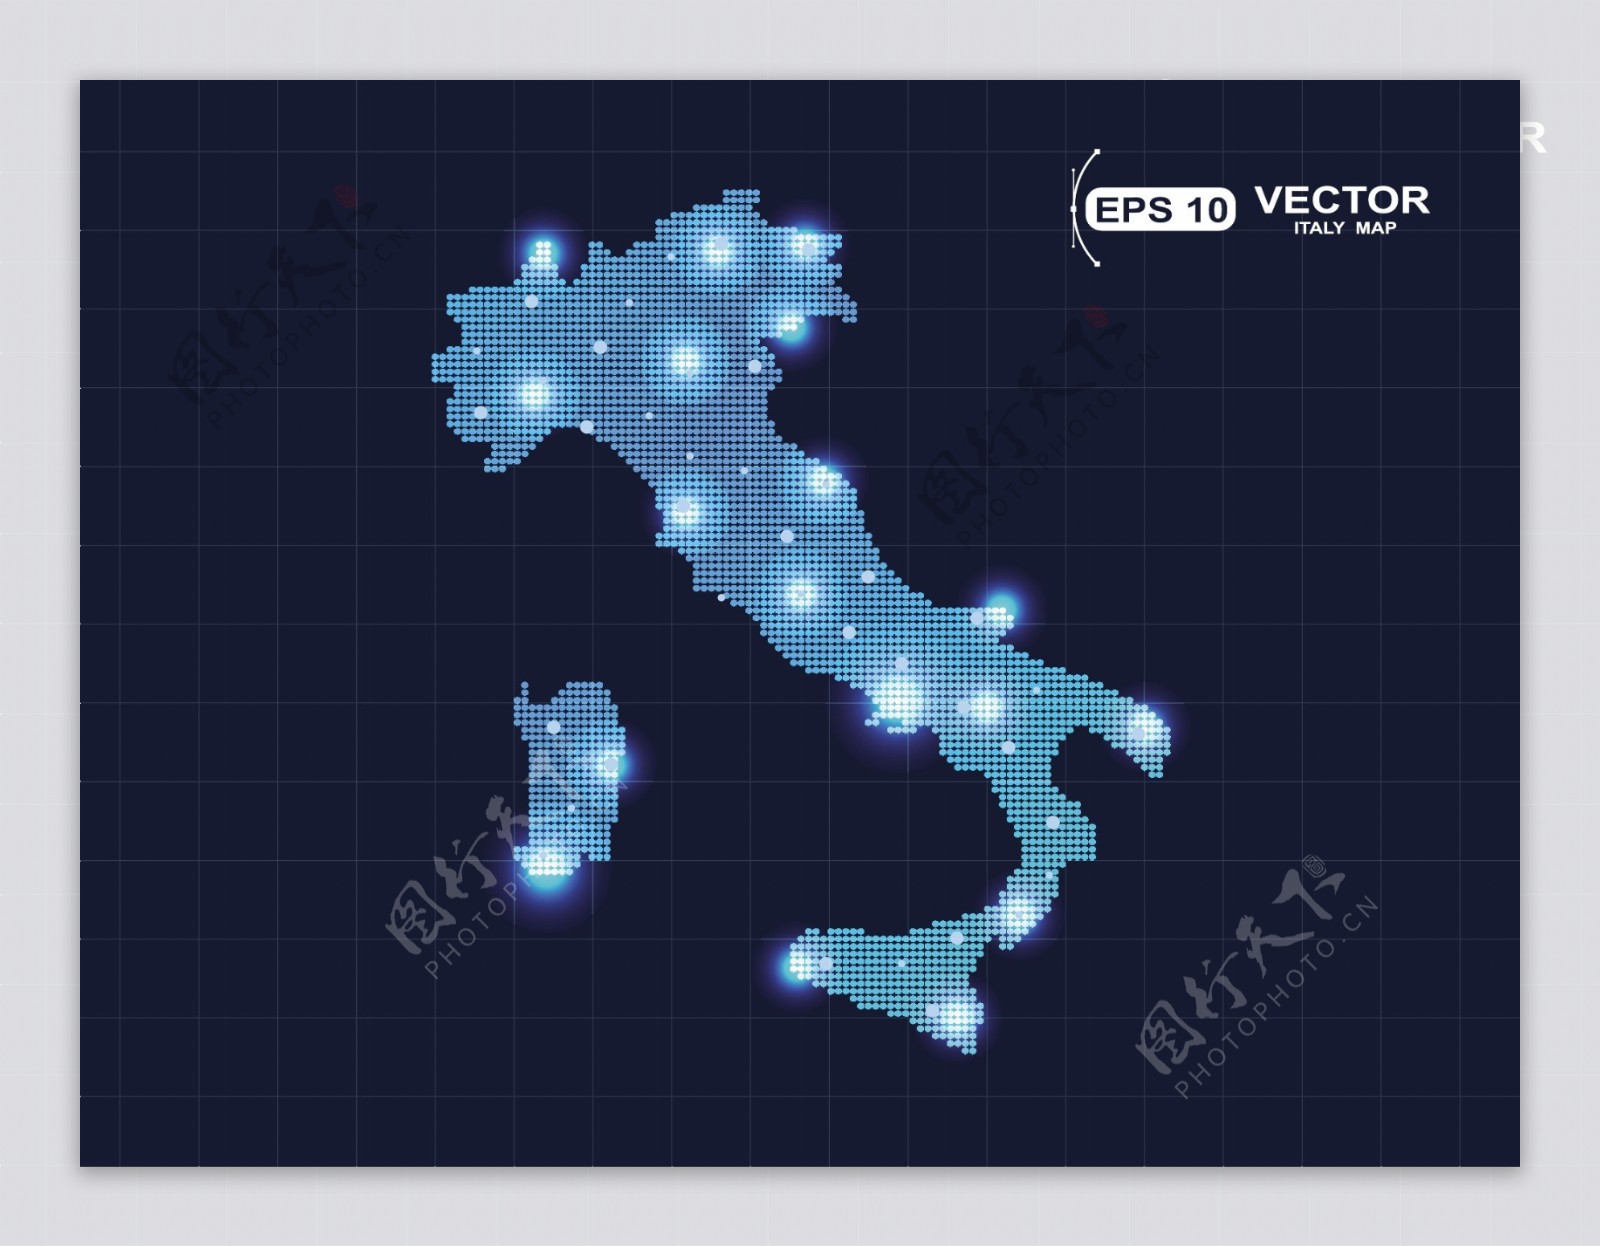 蓝色意大利地图